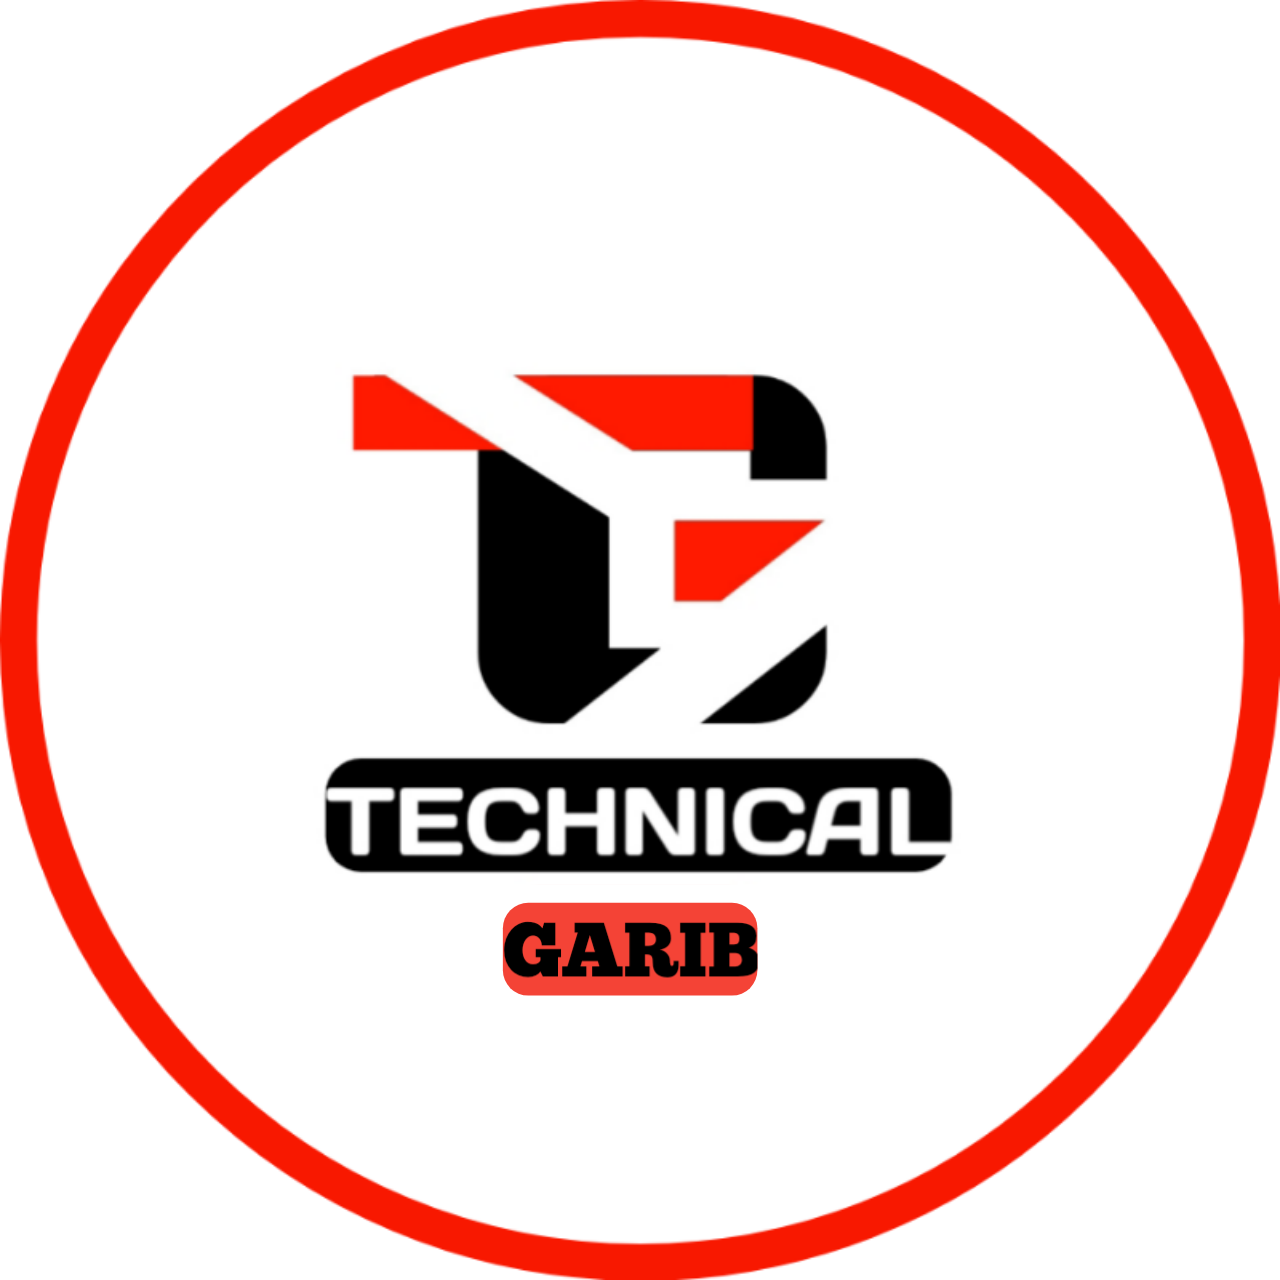 Technical Garib